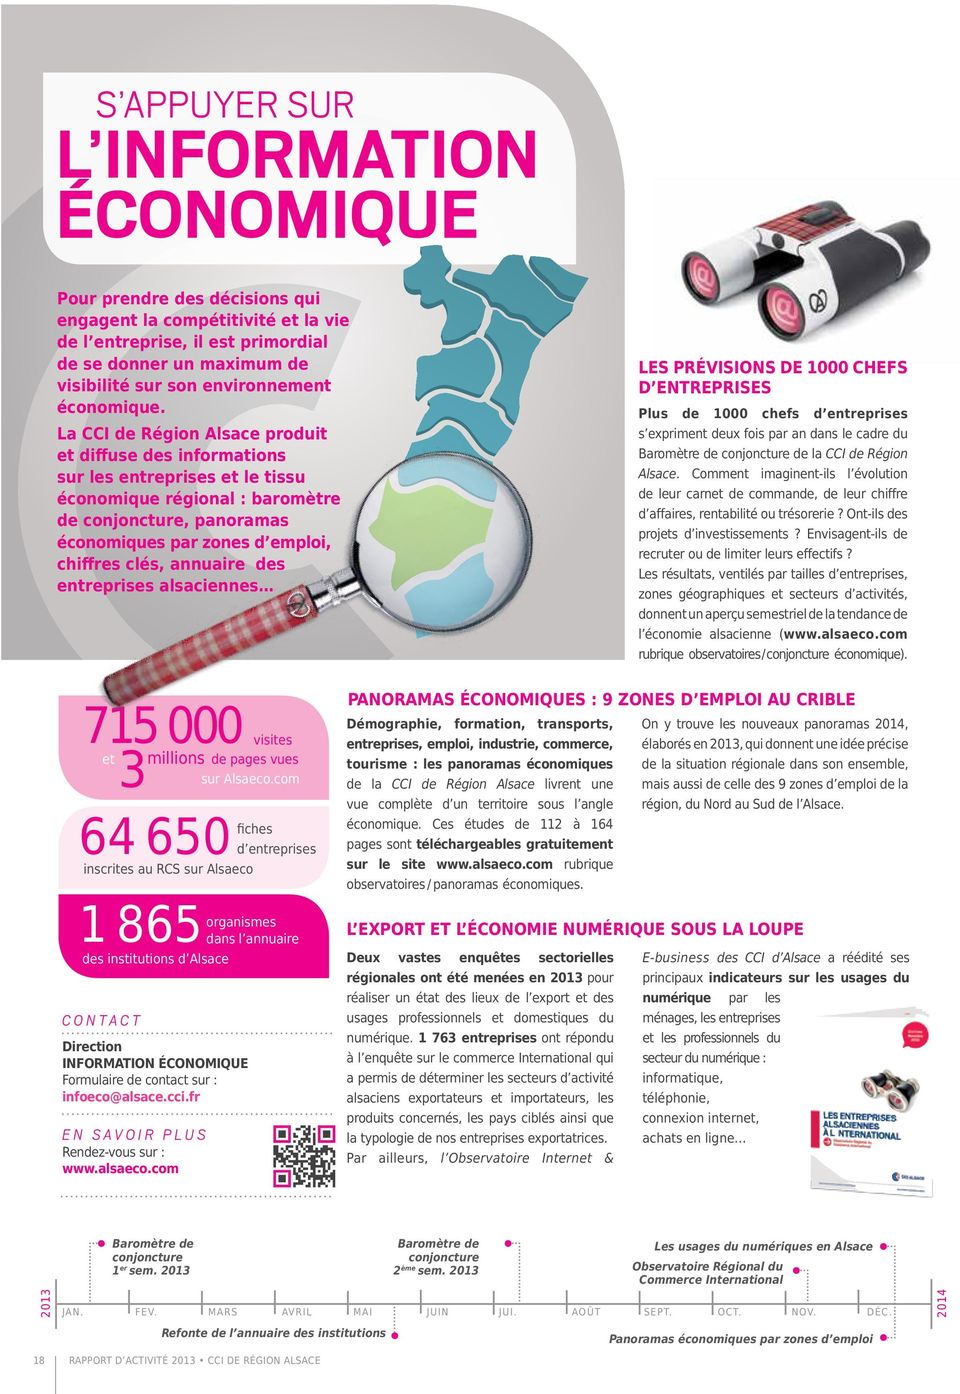 La CCI de Région Alsace produit et diffuse des informations sur les entreprises et le tissu économique régional : baromètre de conjoncture, panoramas économiques par zones d emploi, chiffres clés,